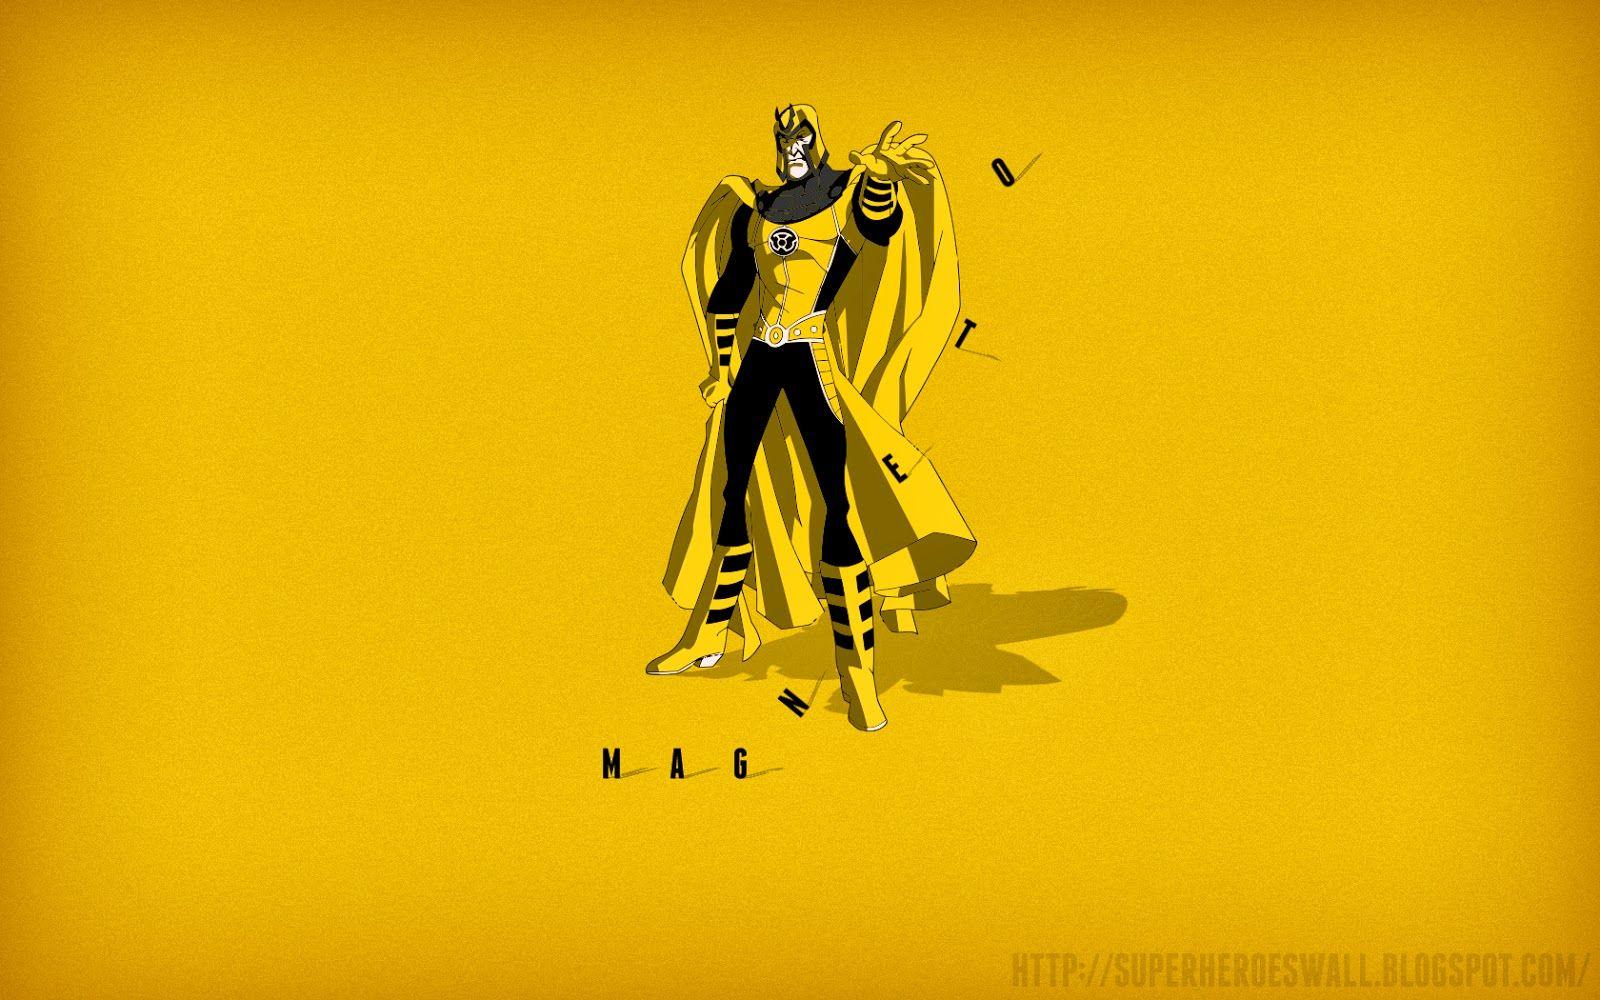 Super Heroes Wallpaper: Magneto X Man HD Wallpaper Super Villain